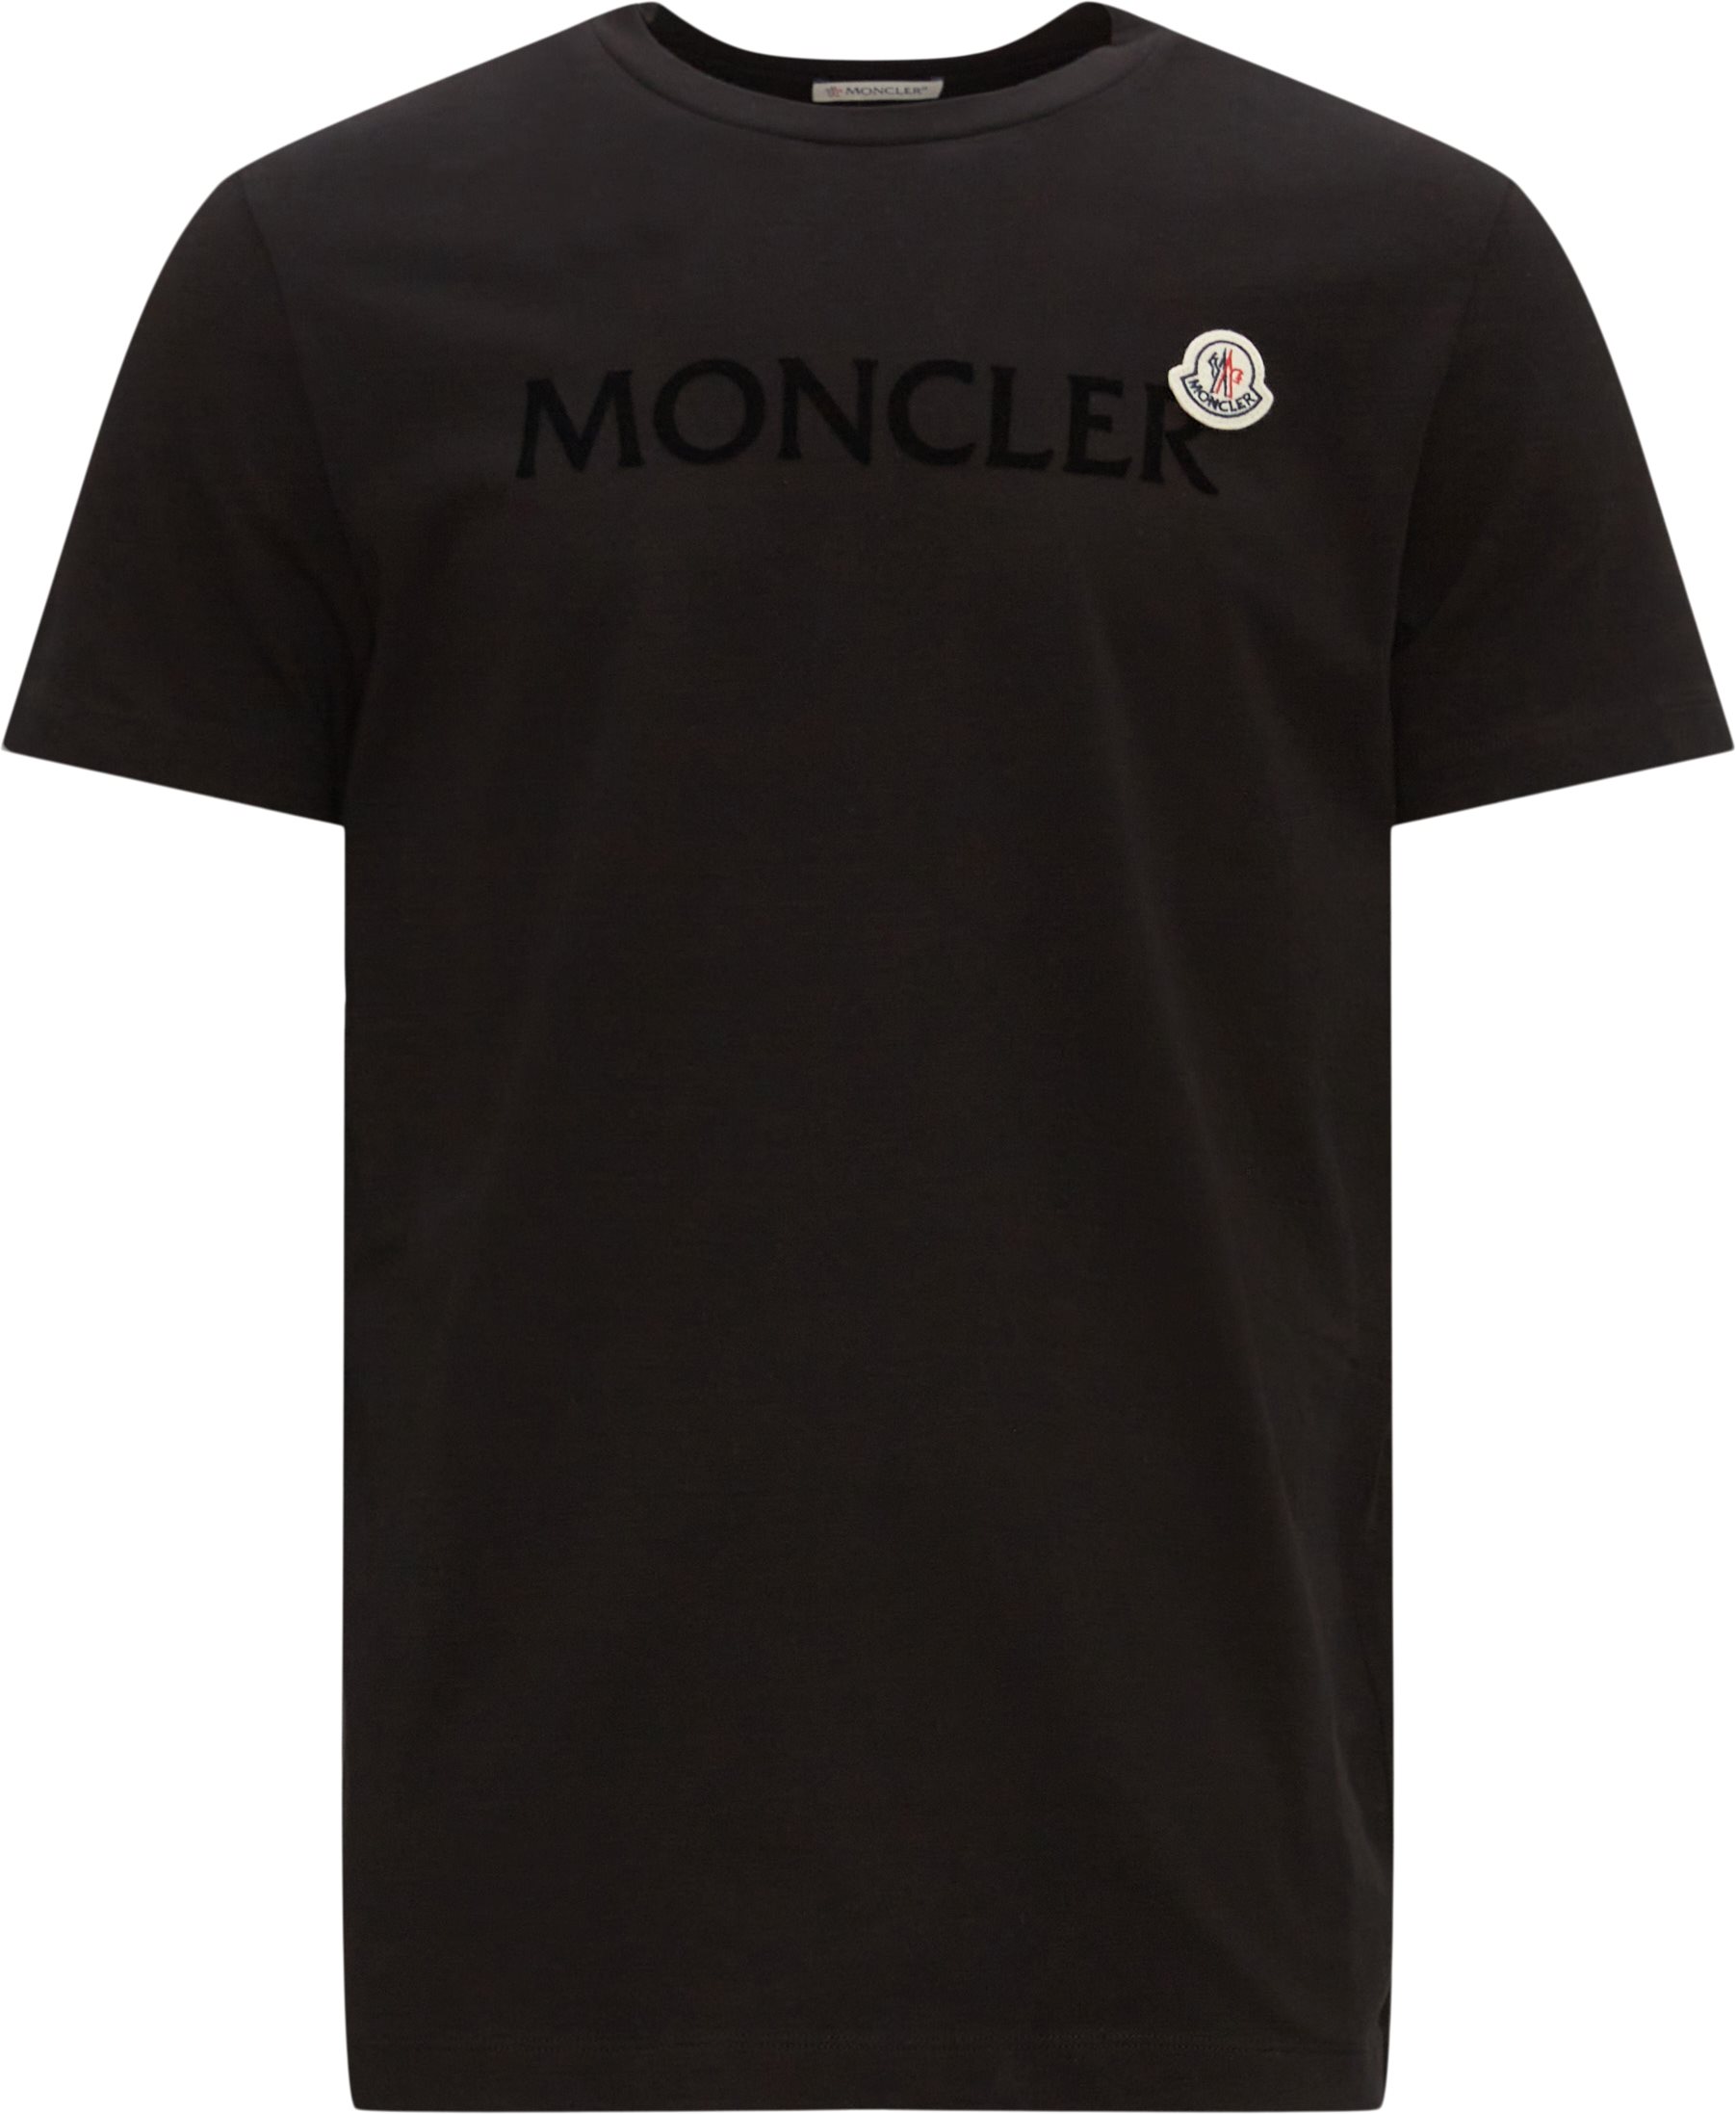 Moncler T-shirts 8C00057 8390T Black